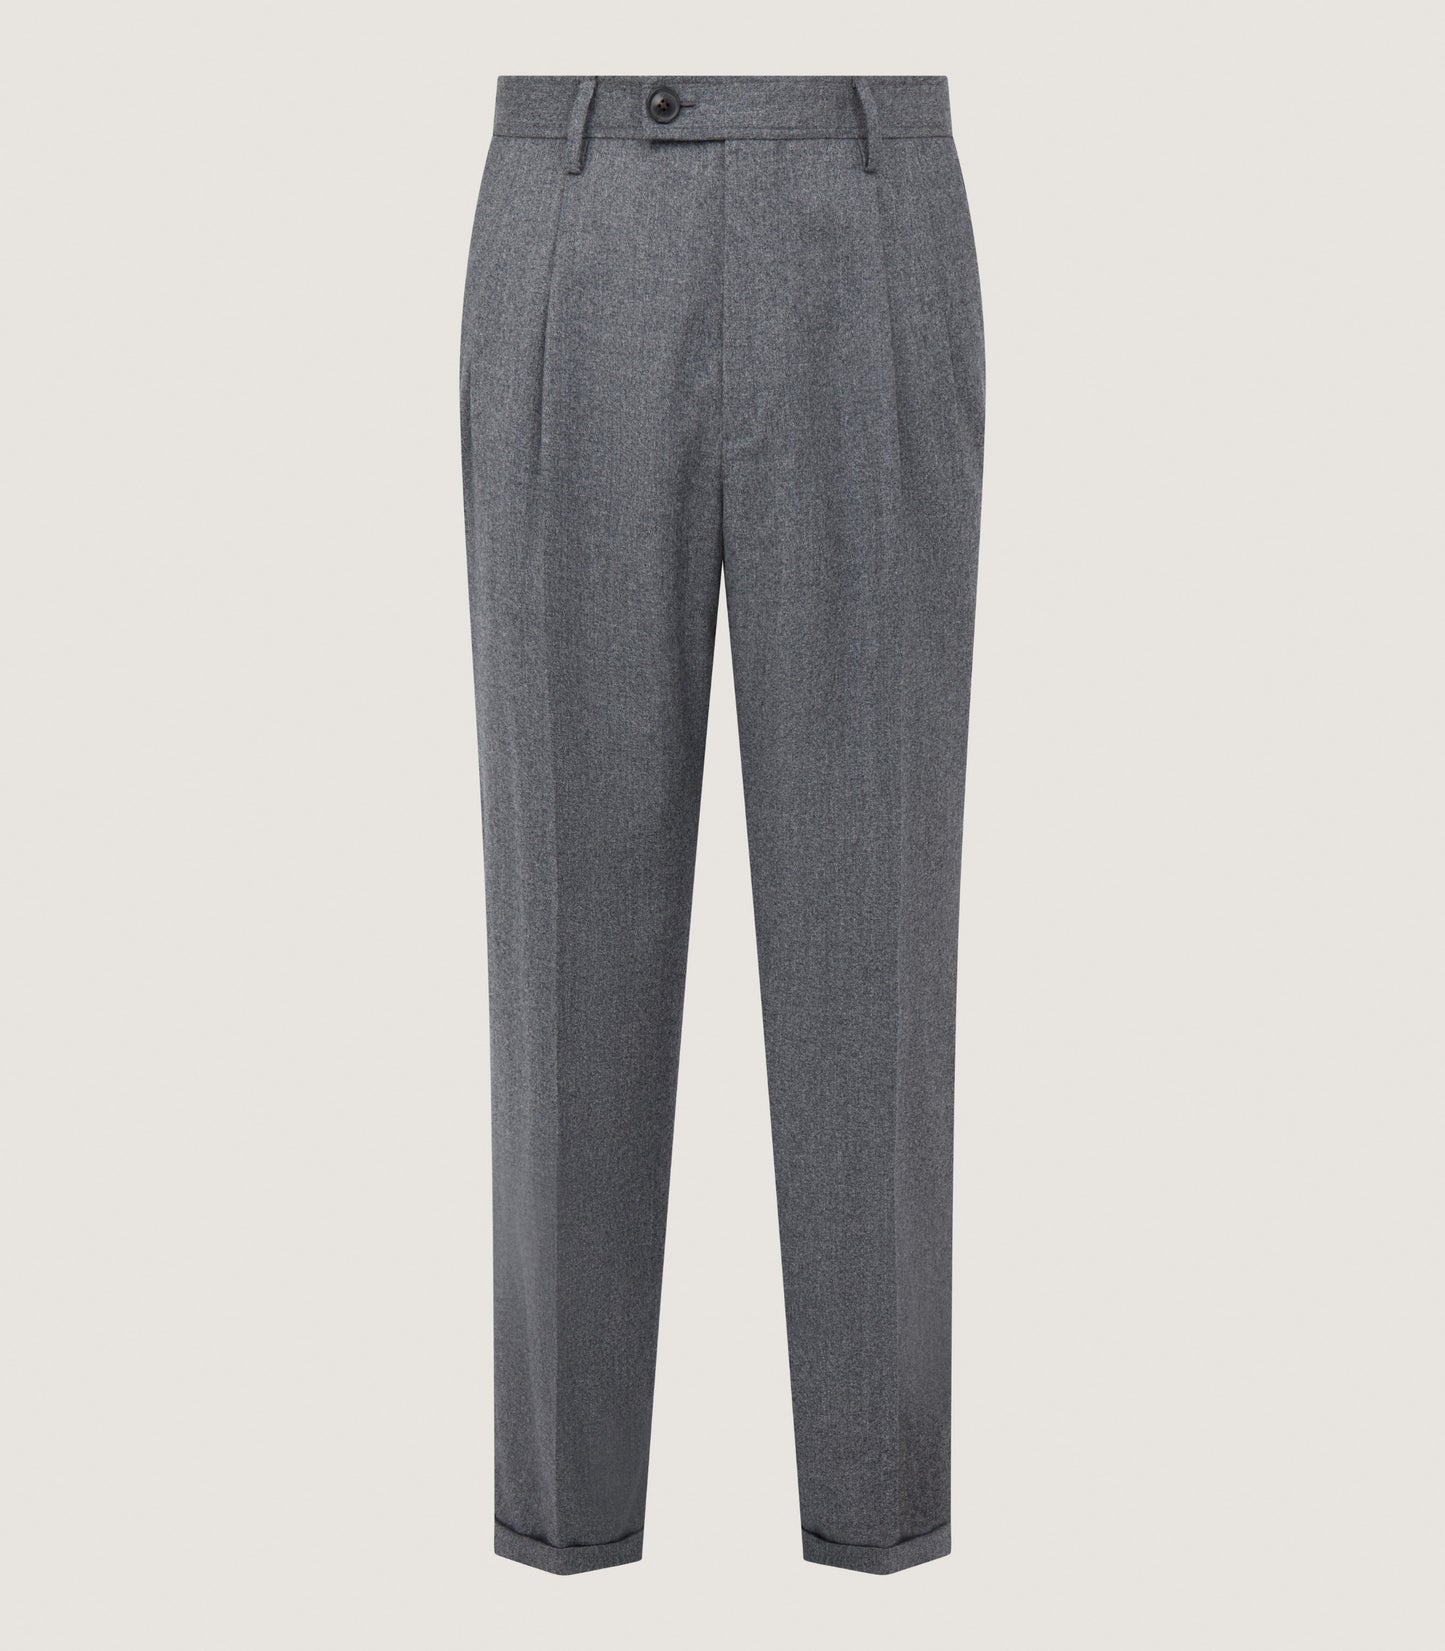 Men's Two Pleat Trouser In Flannel Grey